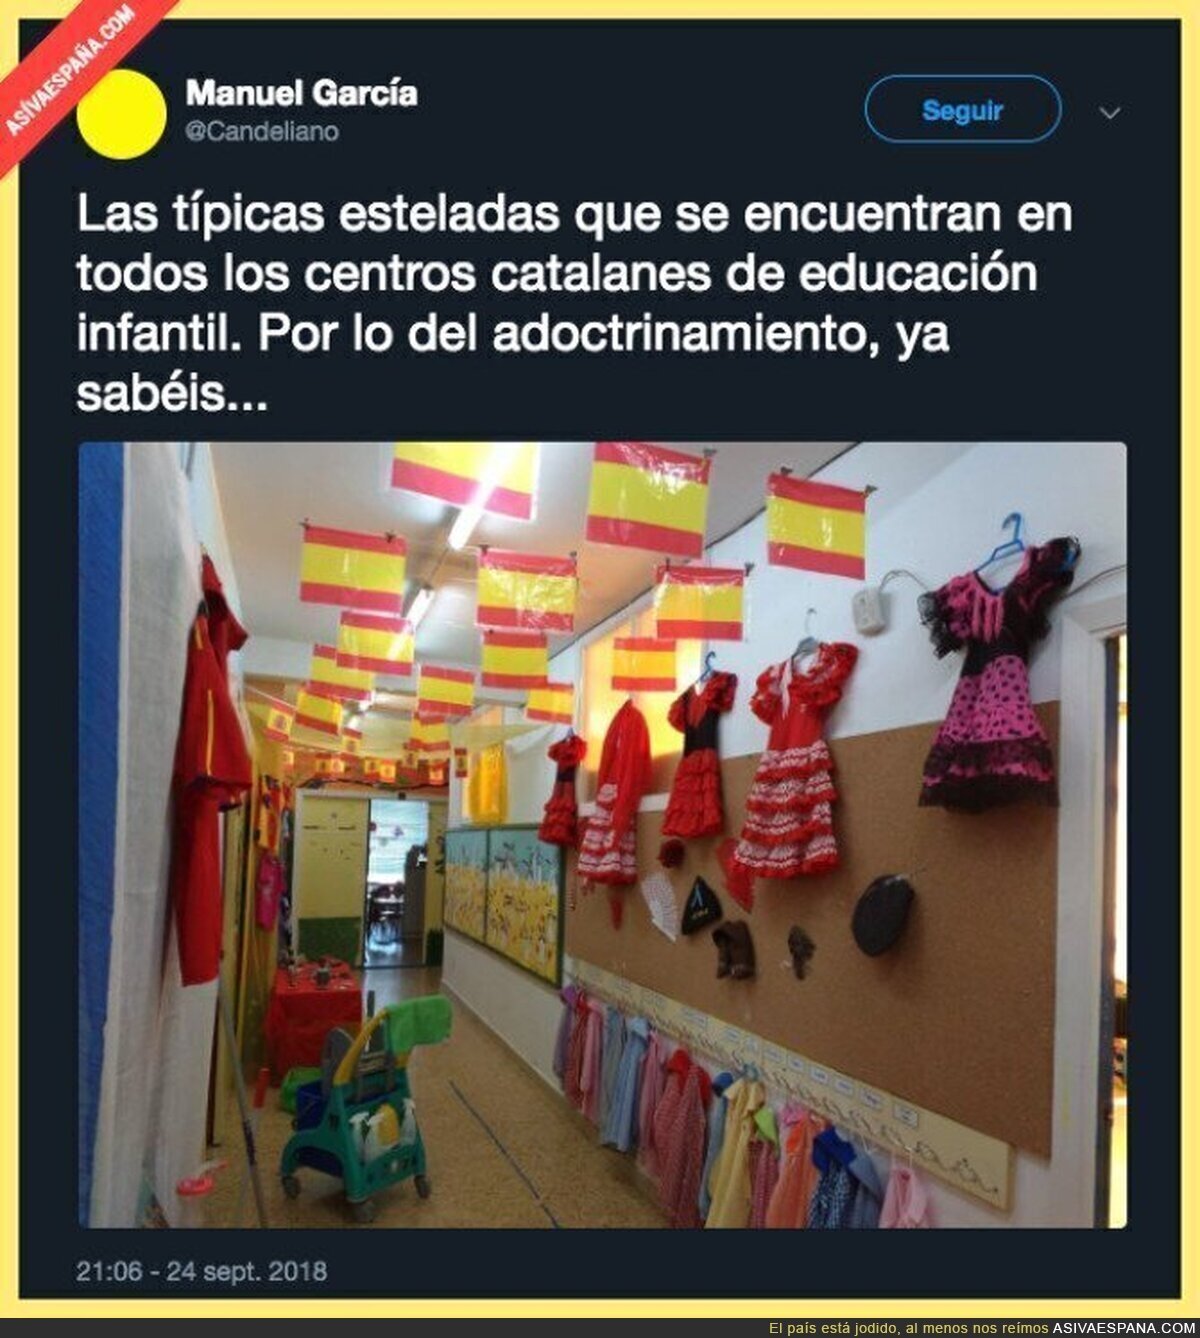 Mientras tanto, en un colegio infantil de Andalucía...